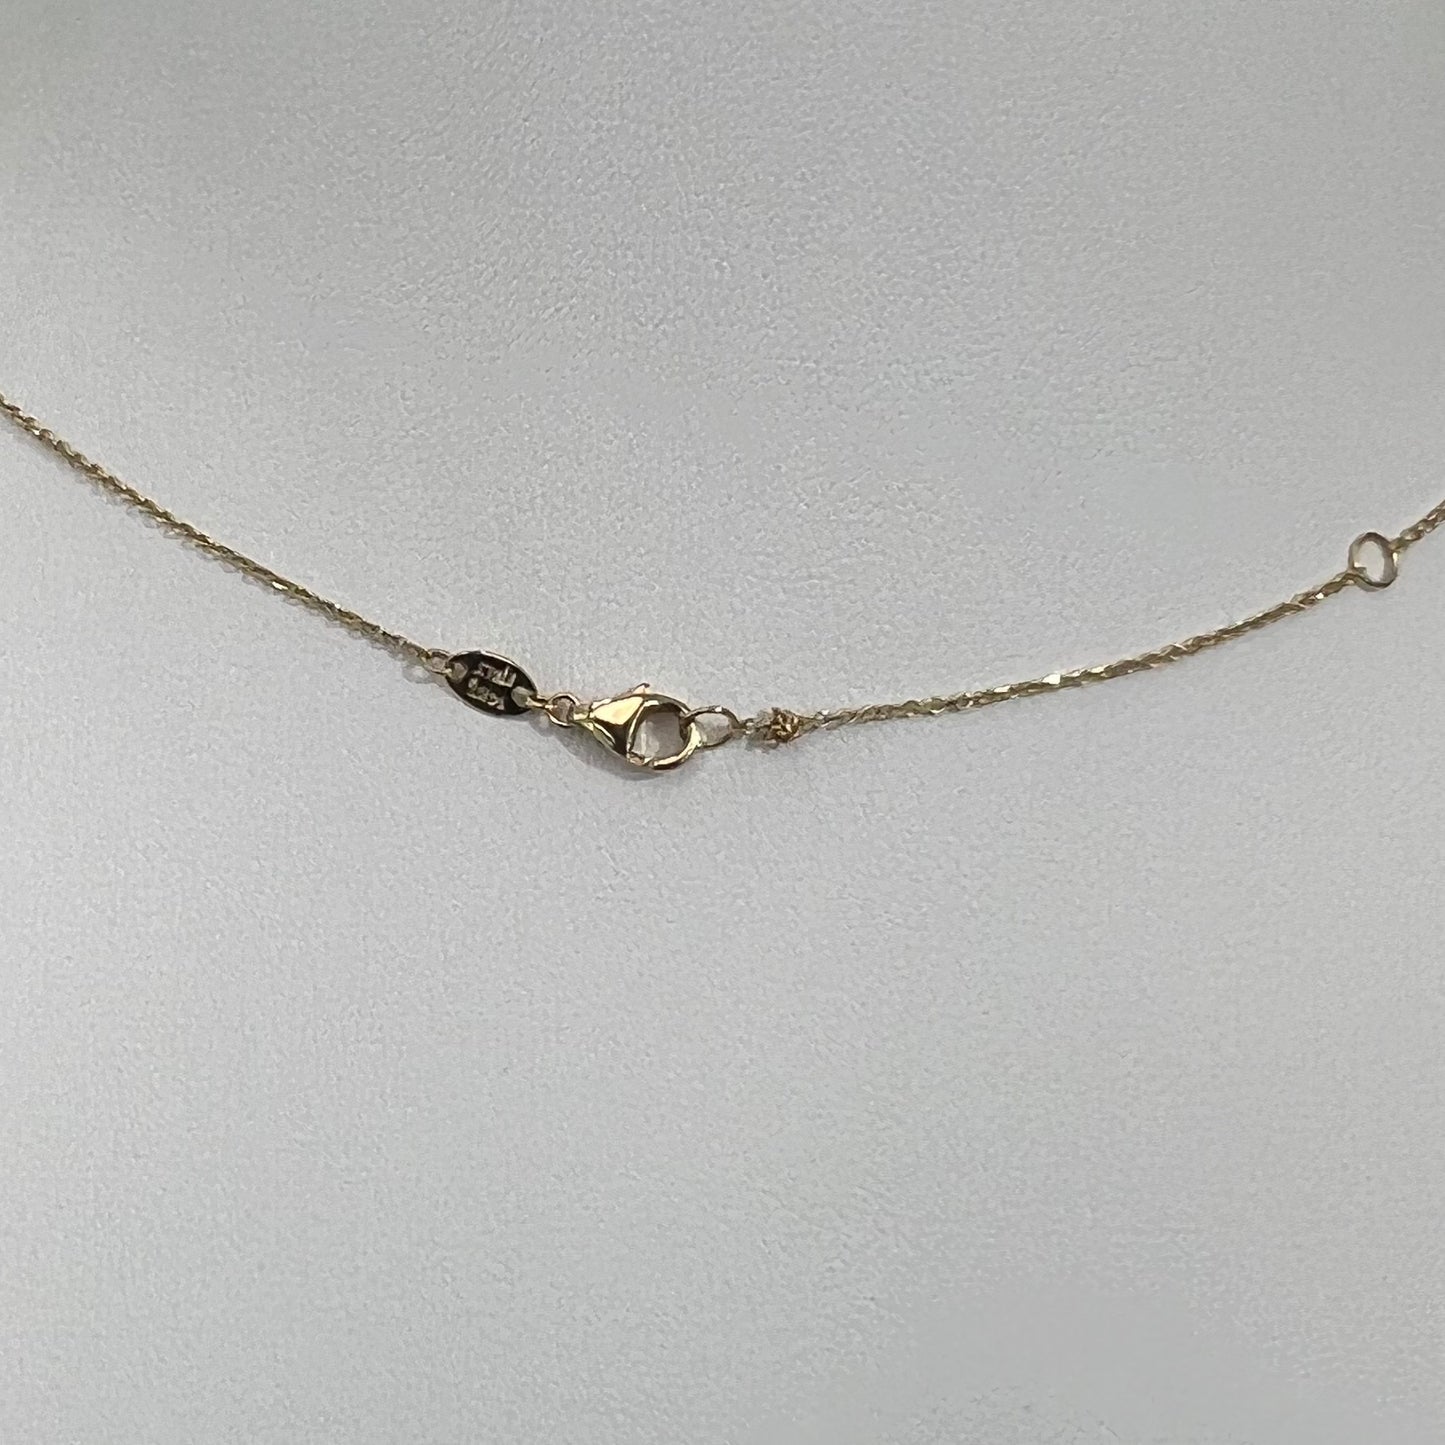 14k Gold Clover Necklace, Pink